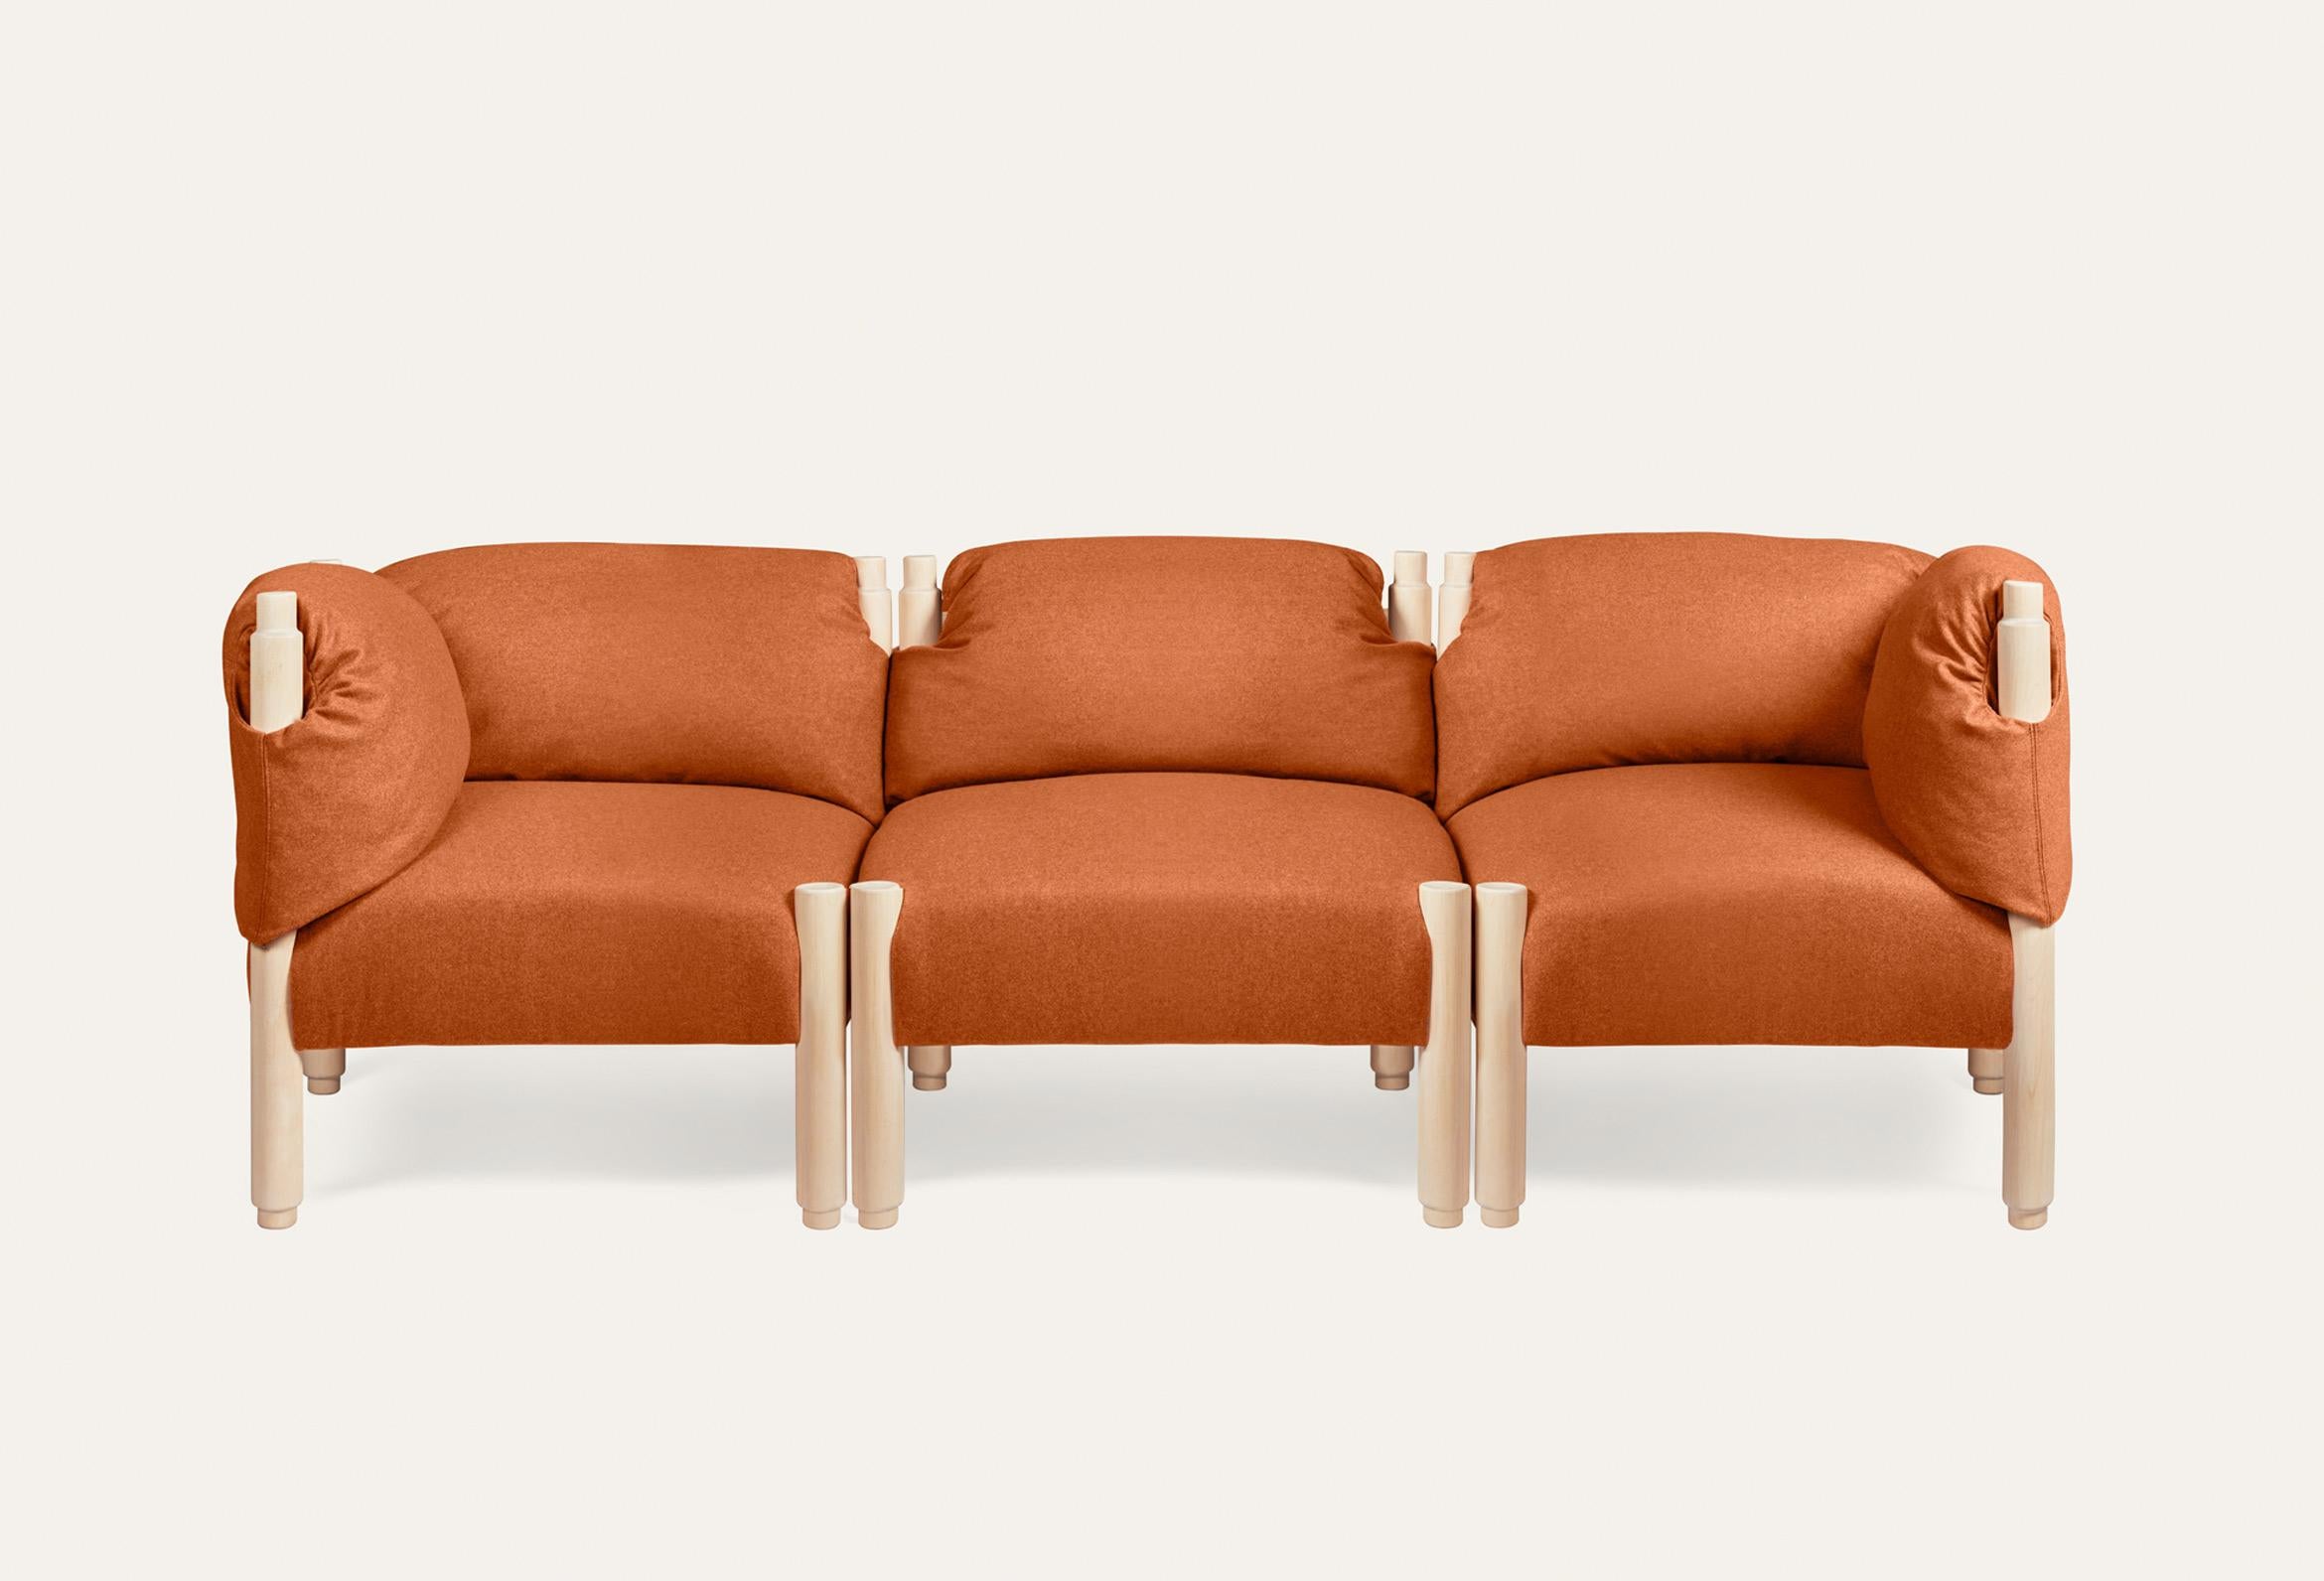 Sofa Stand By Me in Natur und Orange von Storängen Design
Abmessungen: T 222 x B 74 x H 73 x SH 42 cm
MATERIALIEN: Birkenholz, Stoff.
Erhältlich in anderen Farben und Stoffen. Mit fester Rückenlehne oder Kissen.
Erhältlich in verschiedenen Modulen: